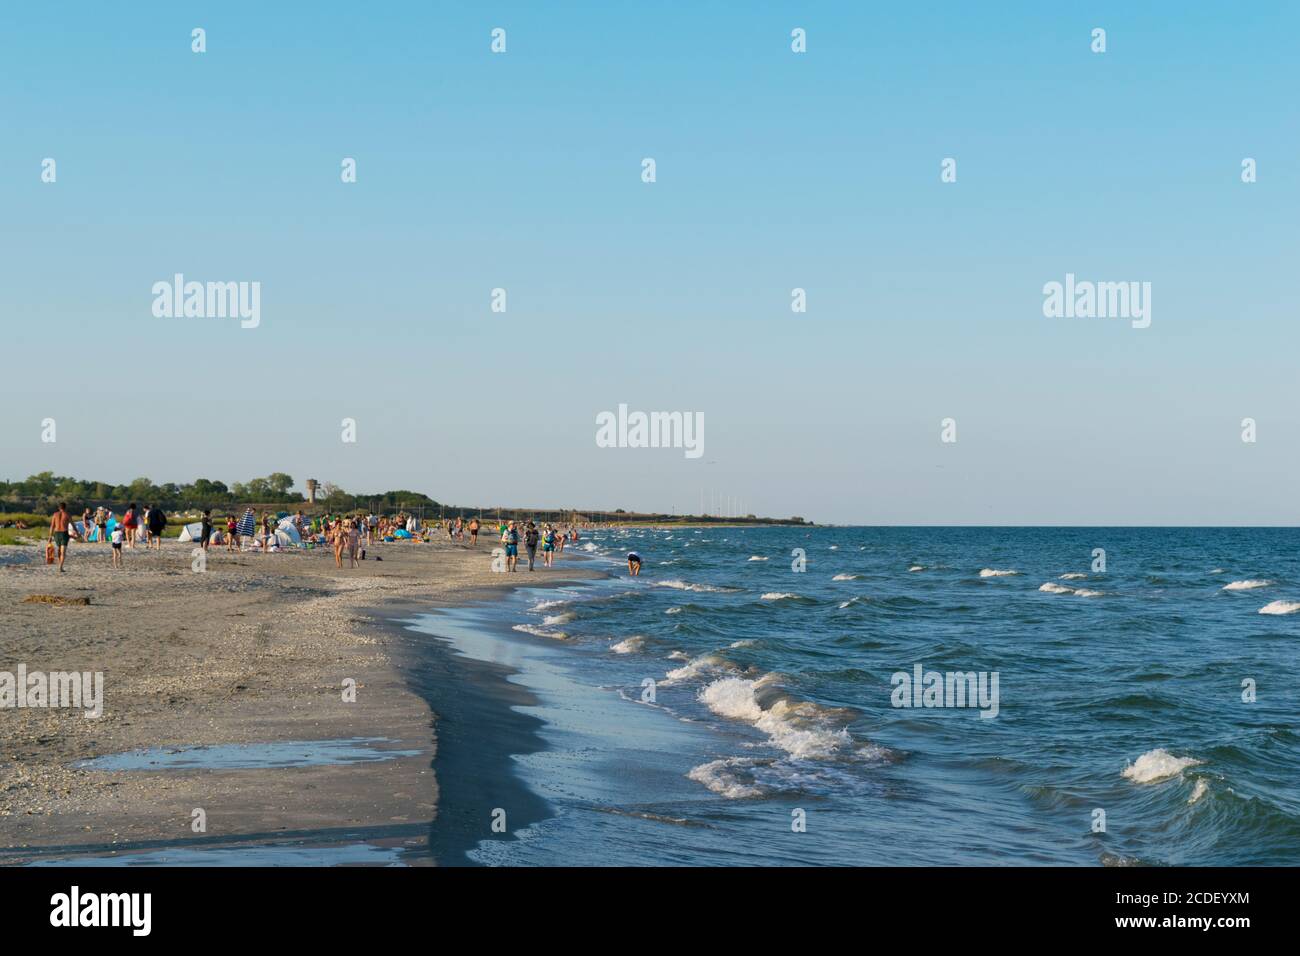 Corbu, Constanta, Romania - 18 agosto 2019: La spiaggia di Corbu con i turisti sullo sfondo, Romania. Foto Stock